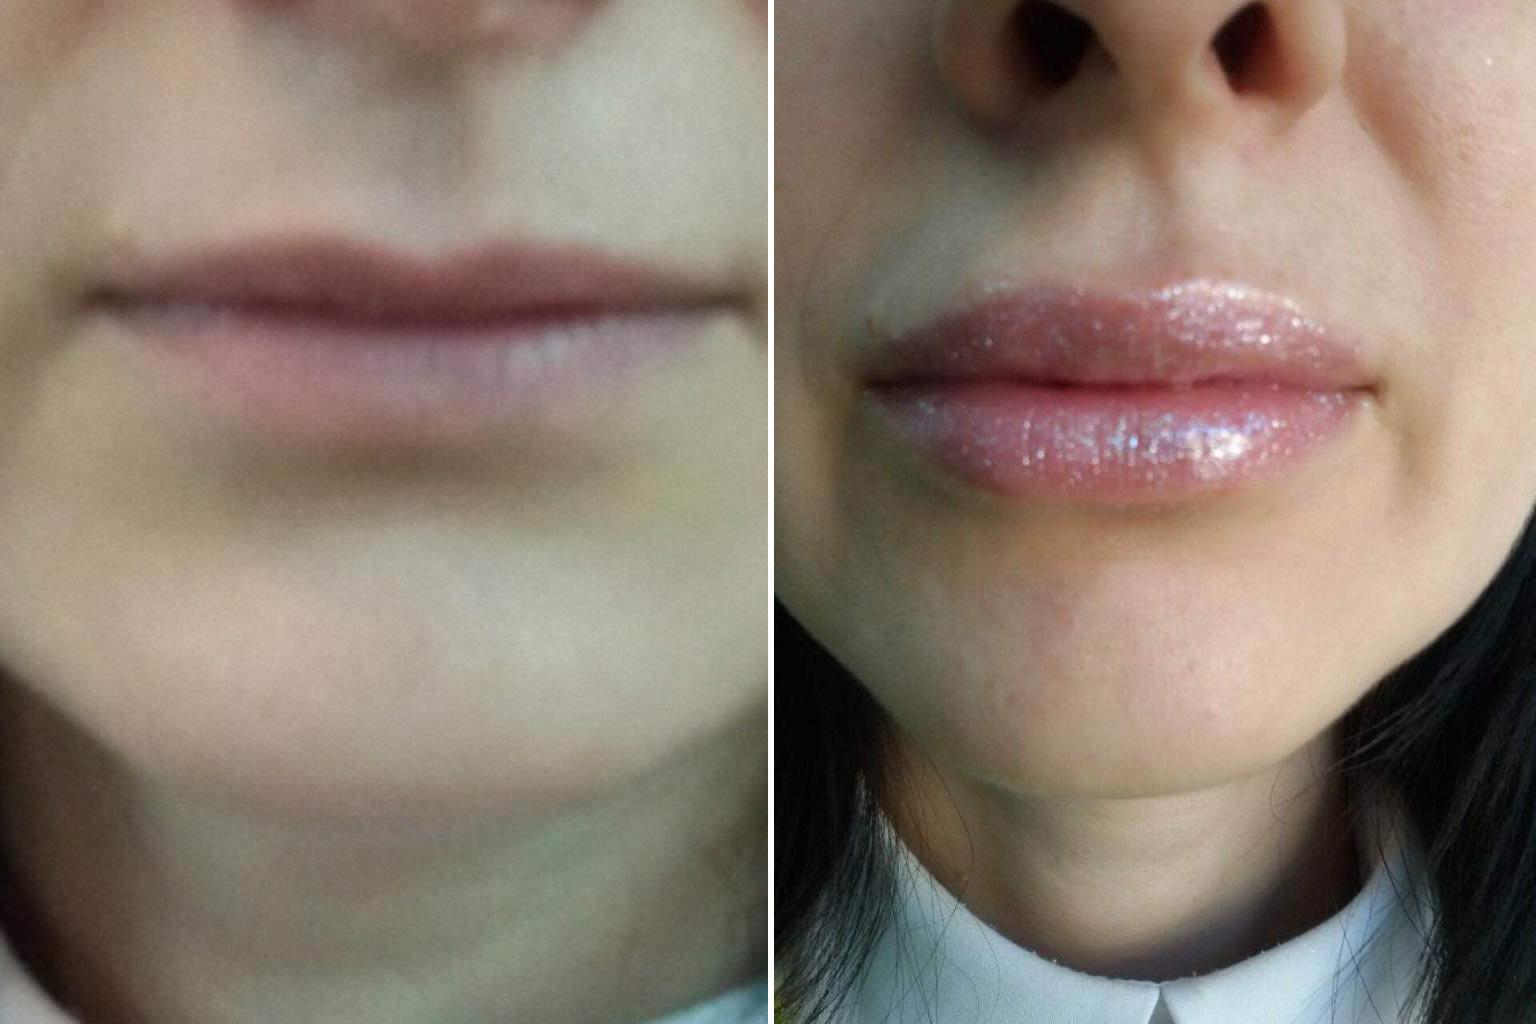 Реабилитация после увеличения губ: что нельзя и что можно? - блог клиники медиэстетик